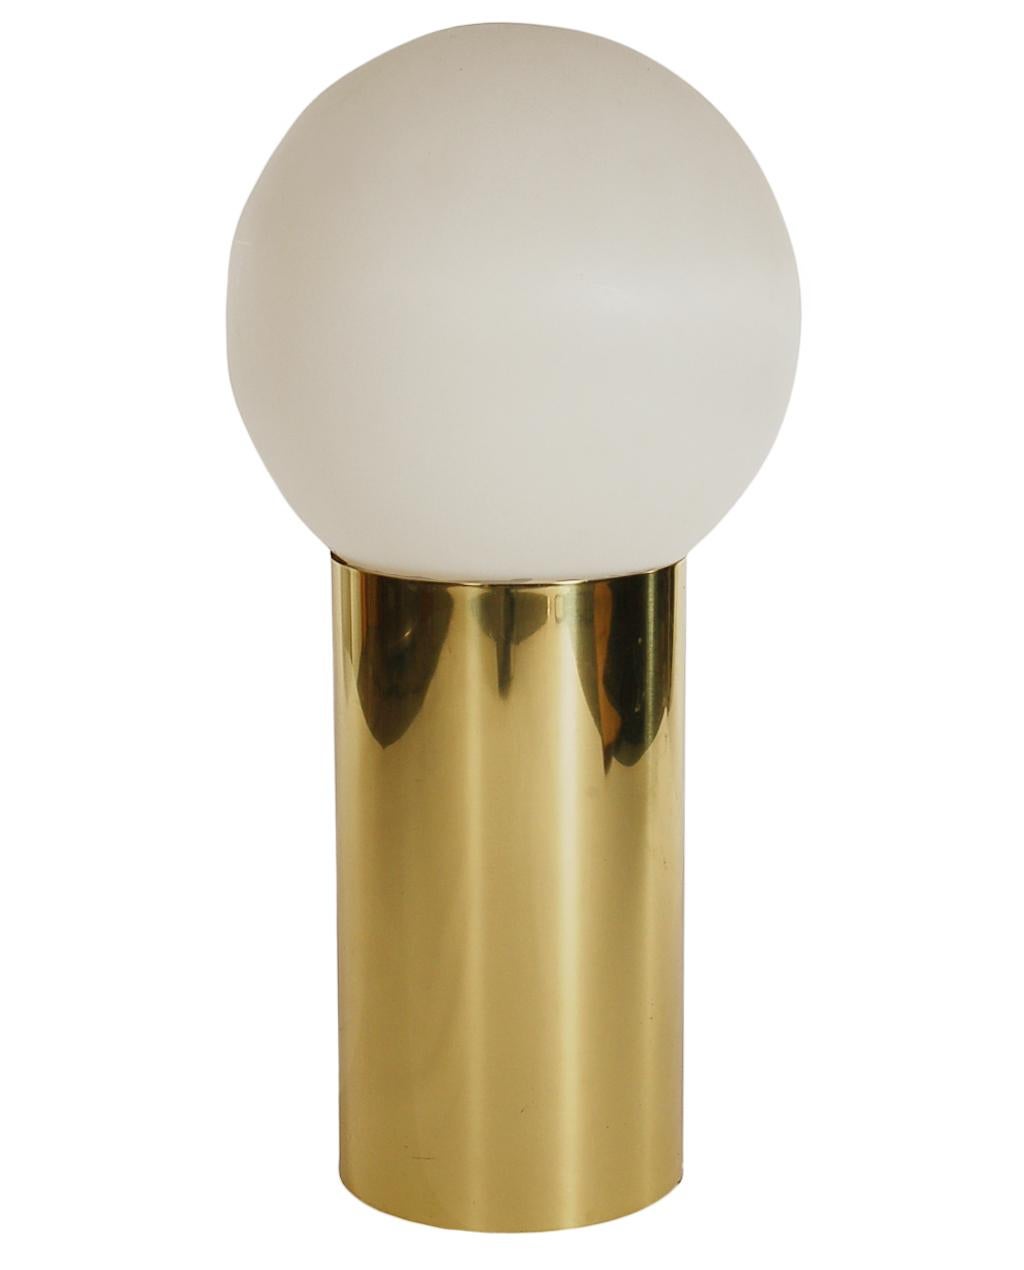 Un lampadaire au design simple et sophistiqué des années 1970. Elle se compose d'une base cylindrique recouverte de laiton et d'un abat-jour sphérique en plastique moulé. Fonctionne avec une ampoule standard. Testé et fonctionnant.